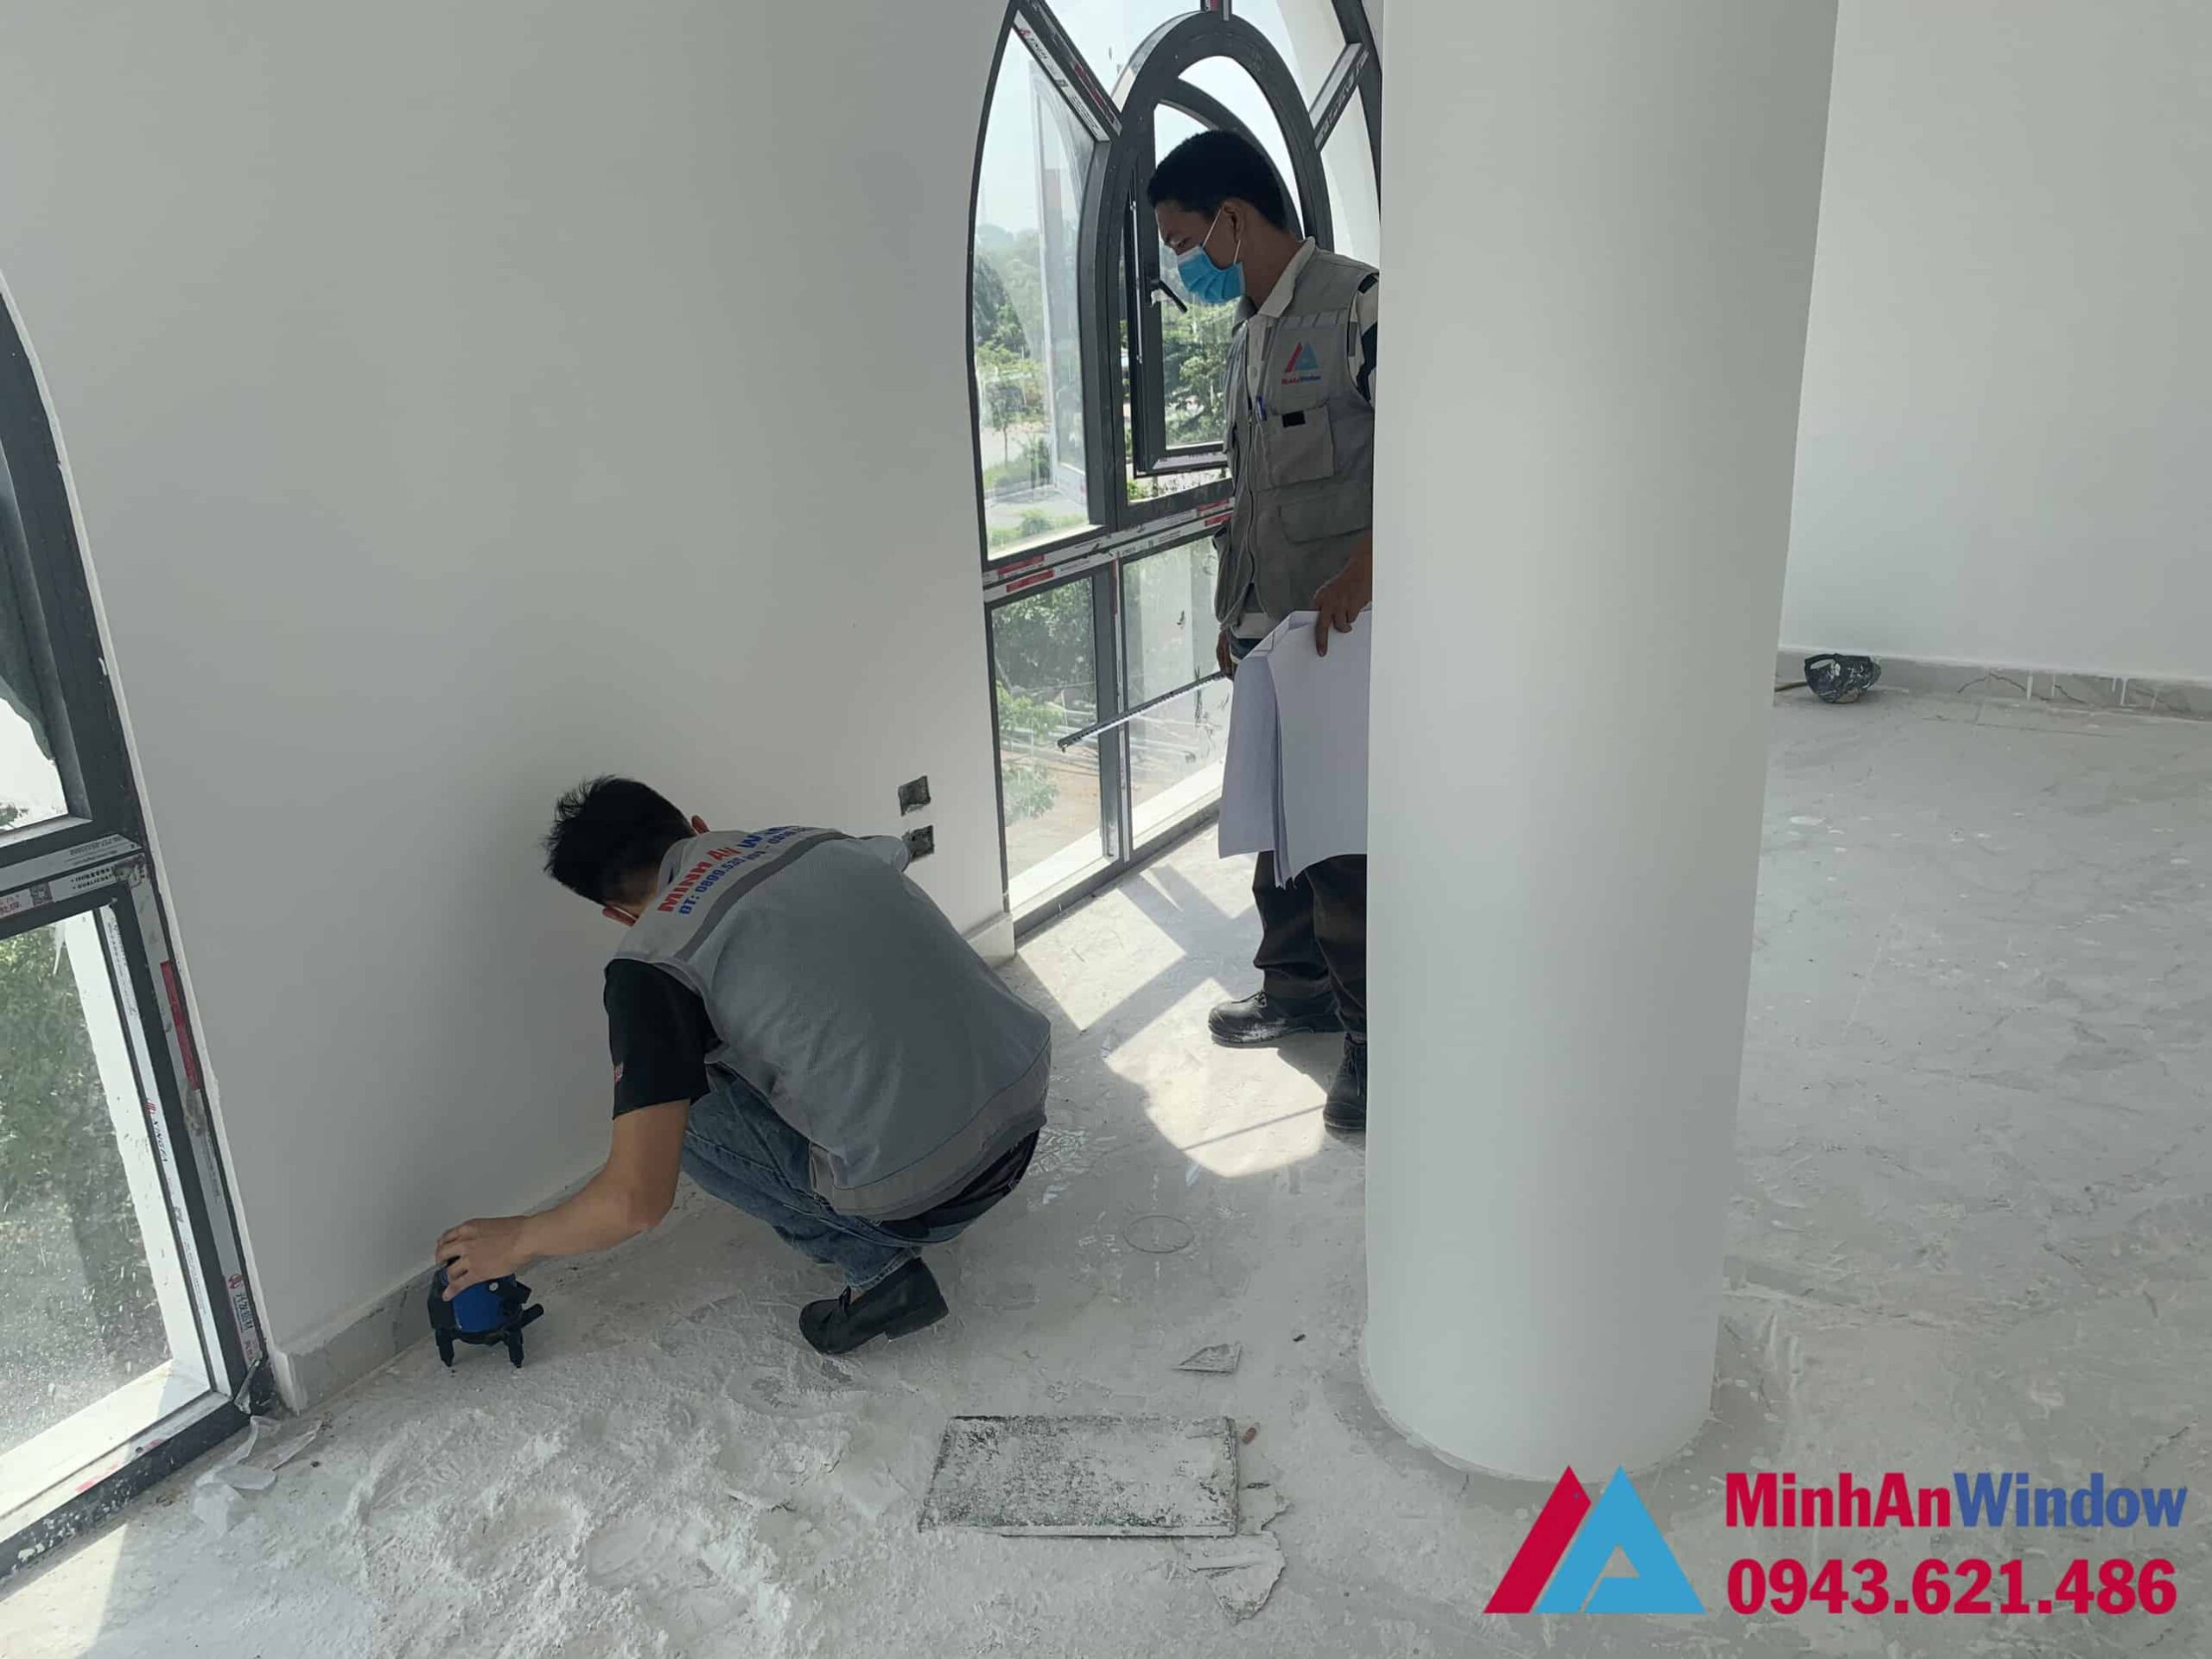 Nhân viên của Minh An Window đang đo đạc và lắp đặt Cửa nhôm Xingfa màu đen